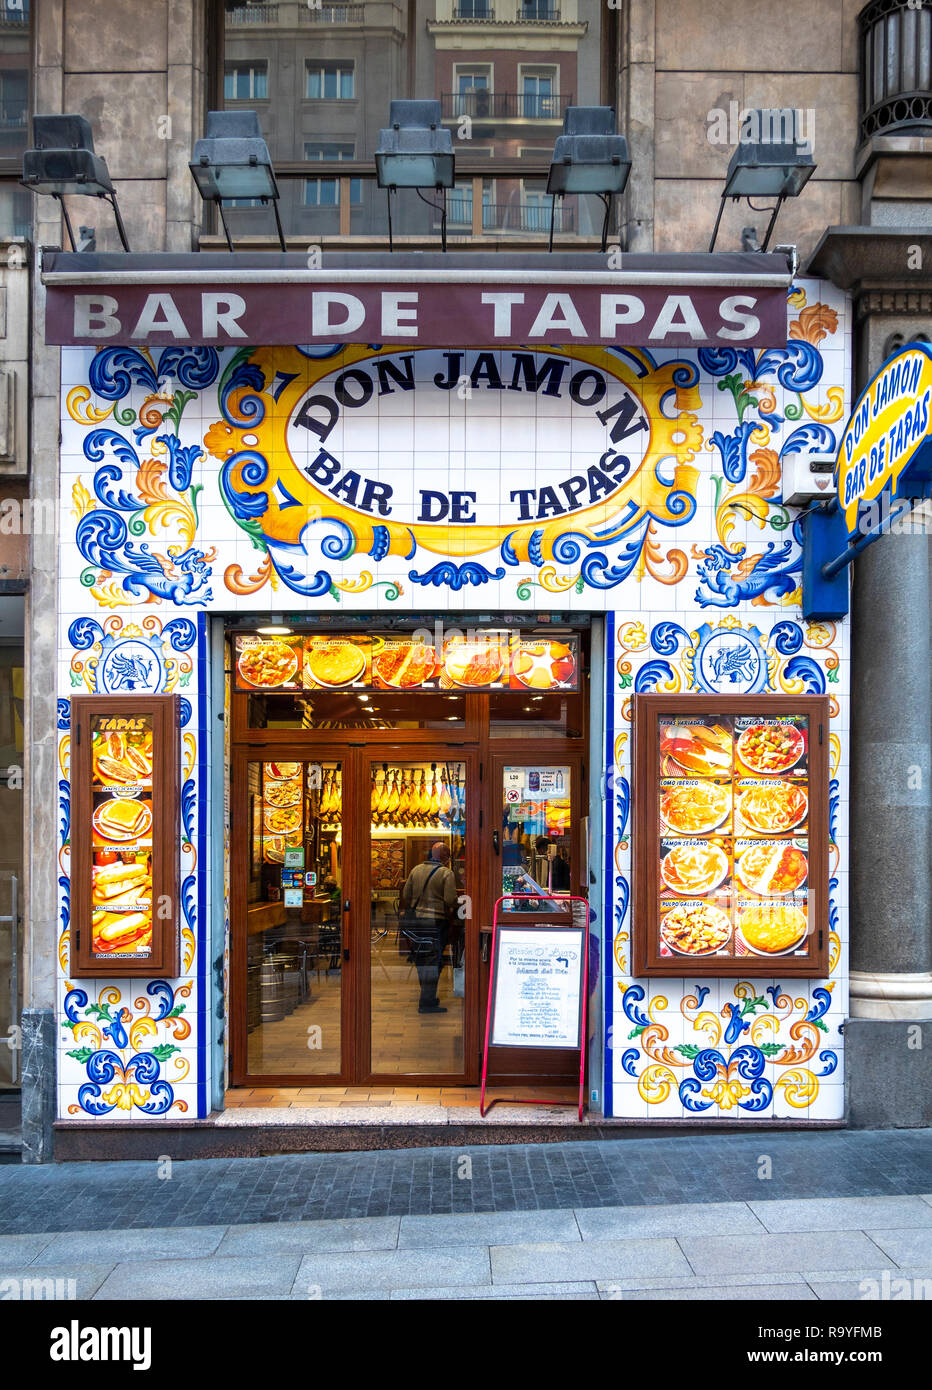 Madrid Don Jamon Bar de tapas. Azulejos decorativos en el tradicional bar de tapas de Madrid, la Gran Vía. Foto de stock